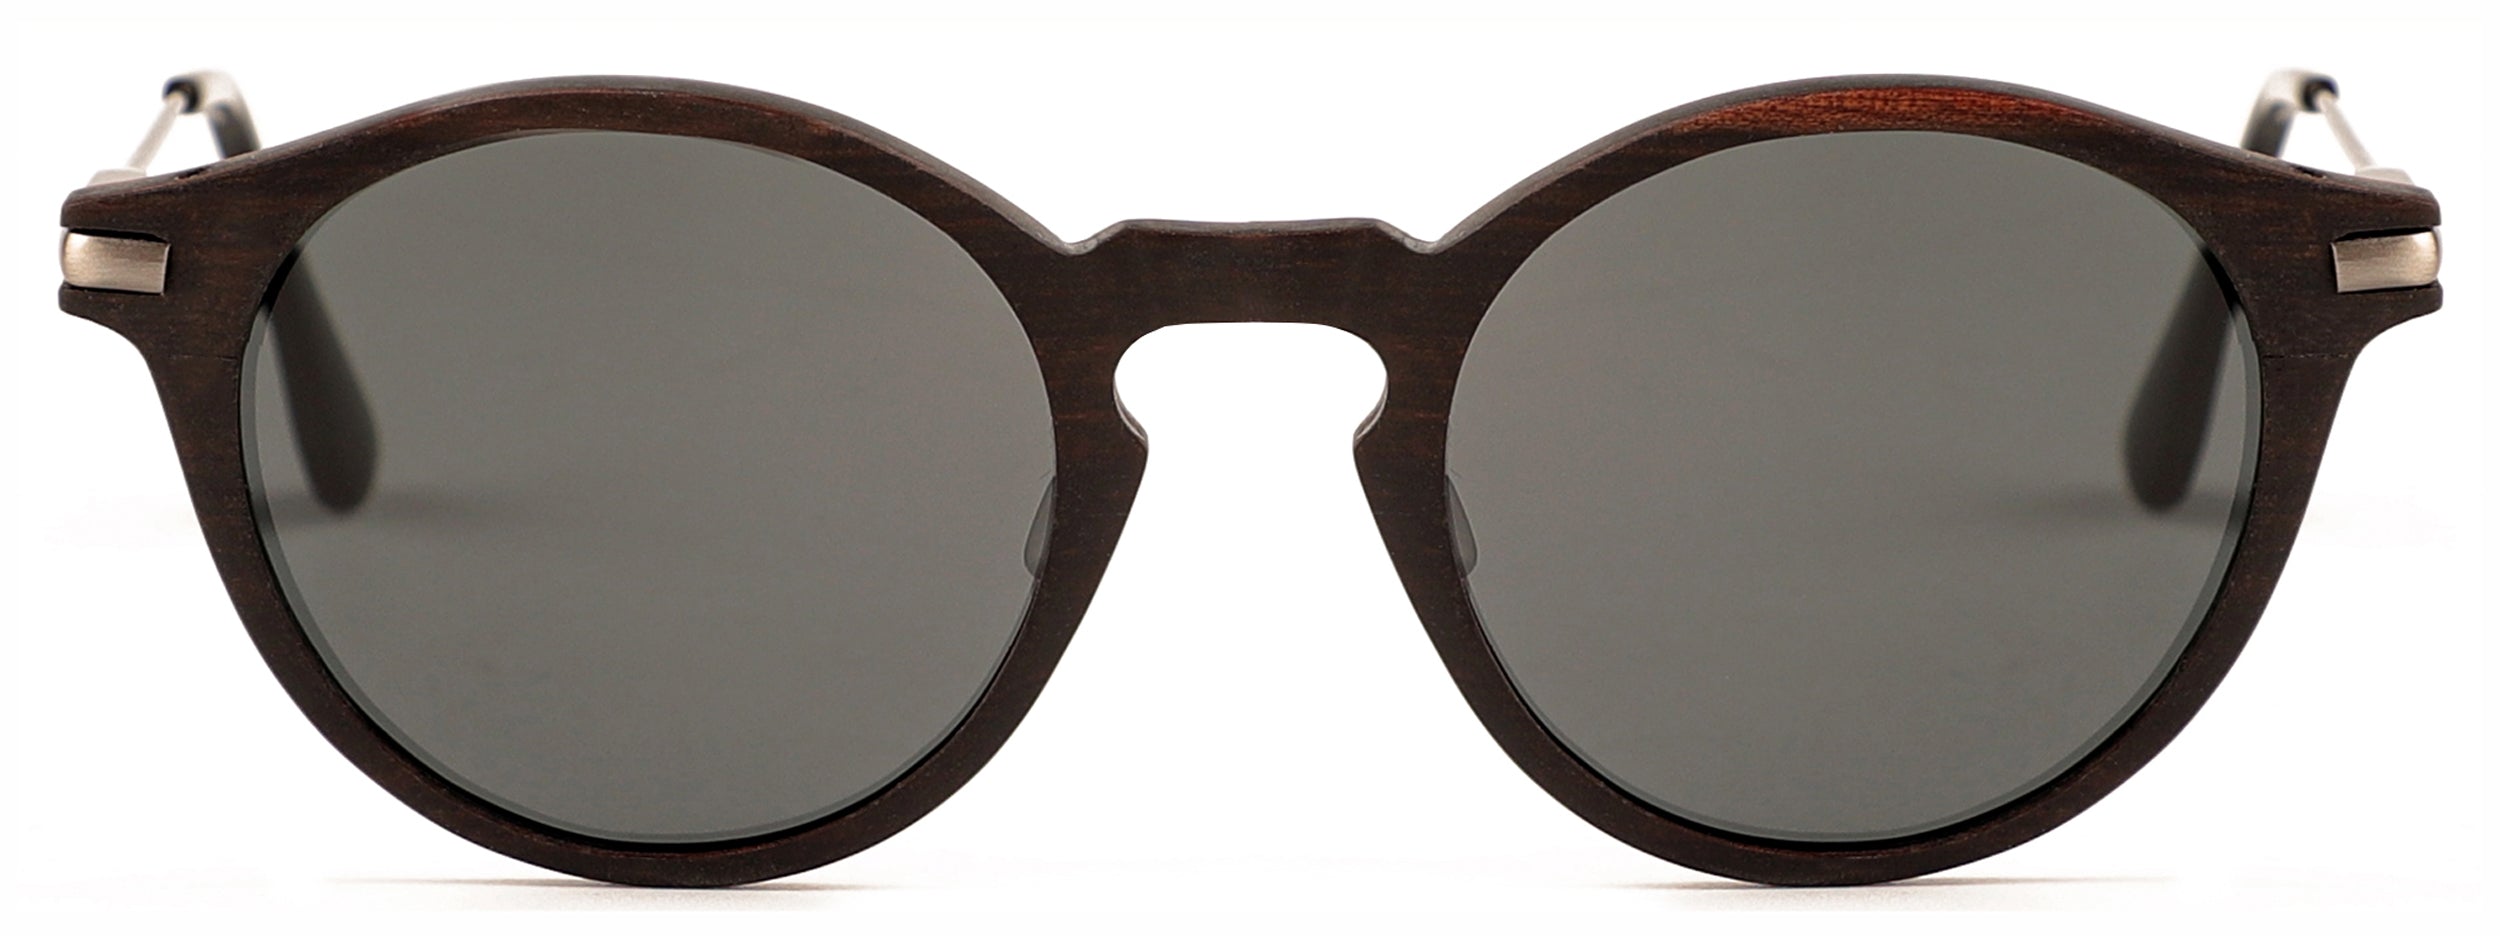 Del Rey Sunglasses (RX Compatible)